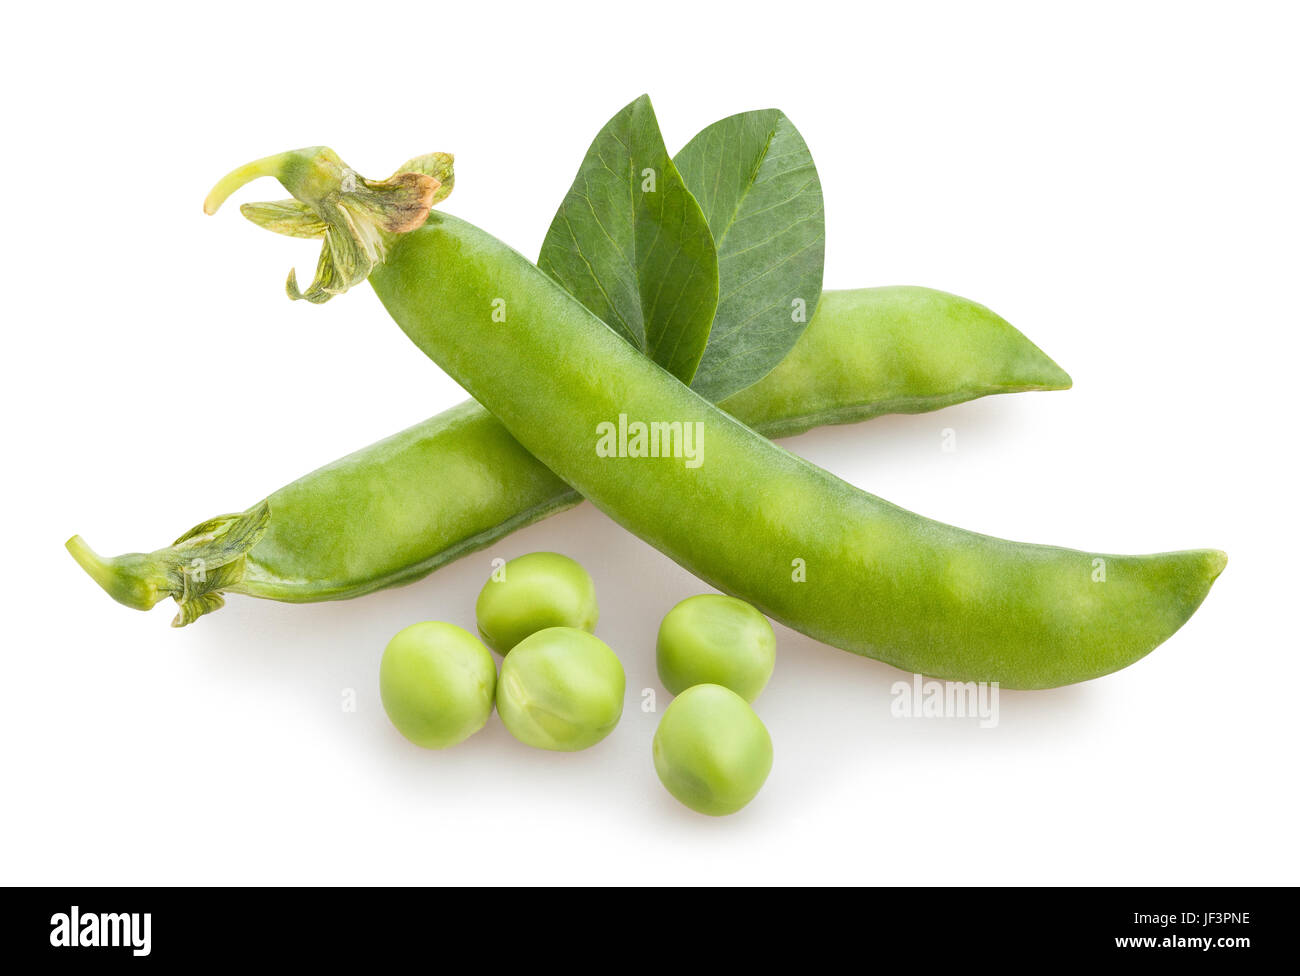 peas isolated Stock Photo